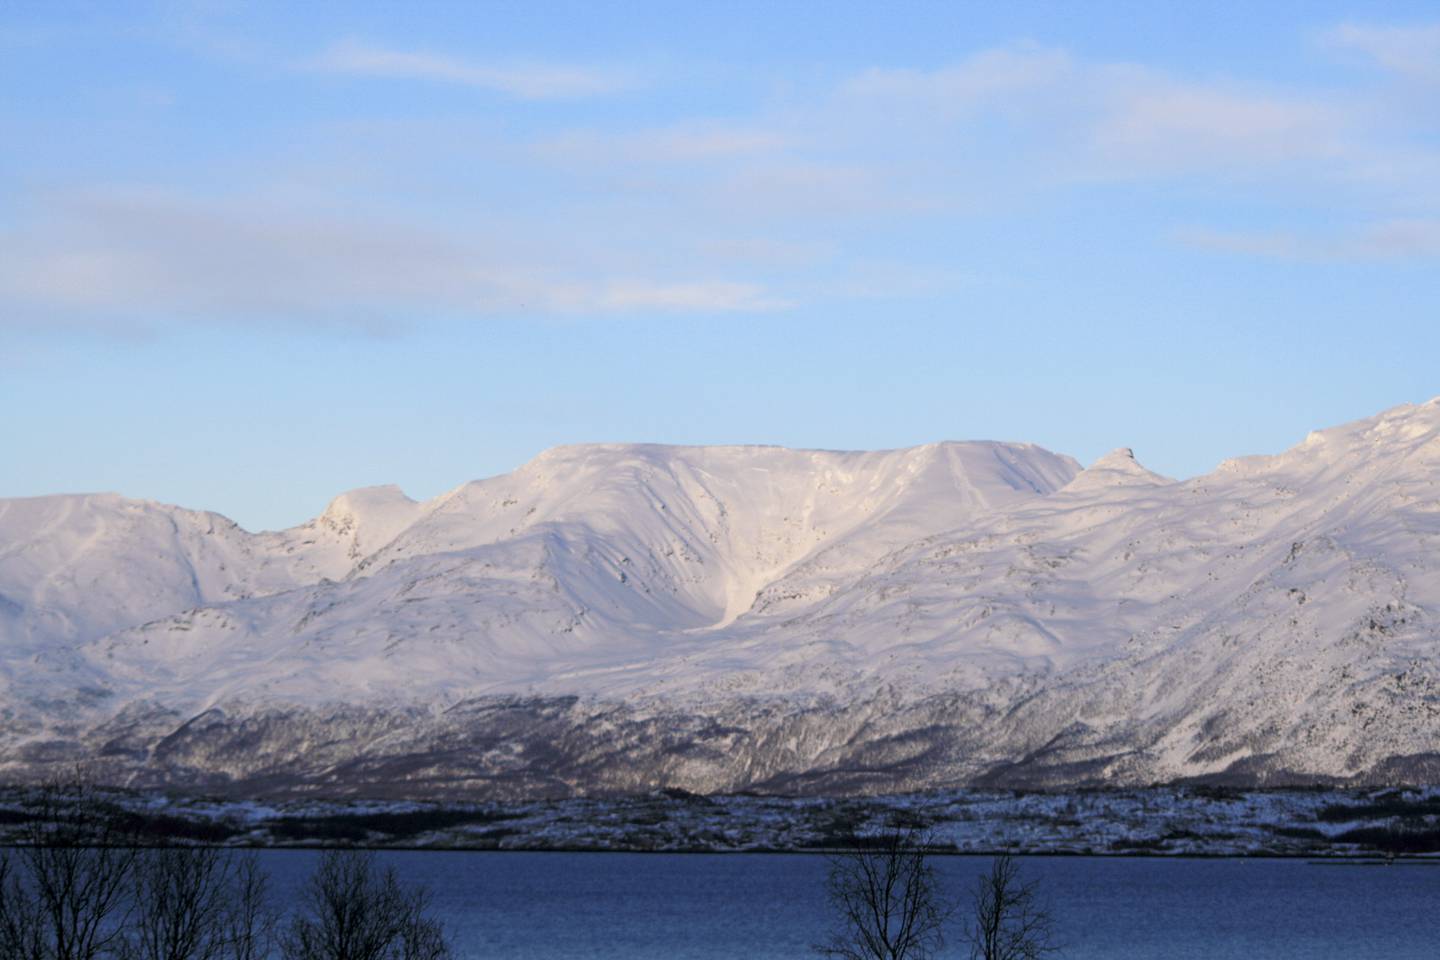 Kåfjord er en av kommunene uten noe vern etter naturmangfoldloven, verken av land- eller havarealer, ifølge SSB. Bildet viser det 1.288 meter høye fjellet Sorbmegáisá.